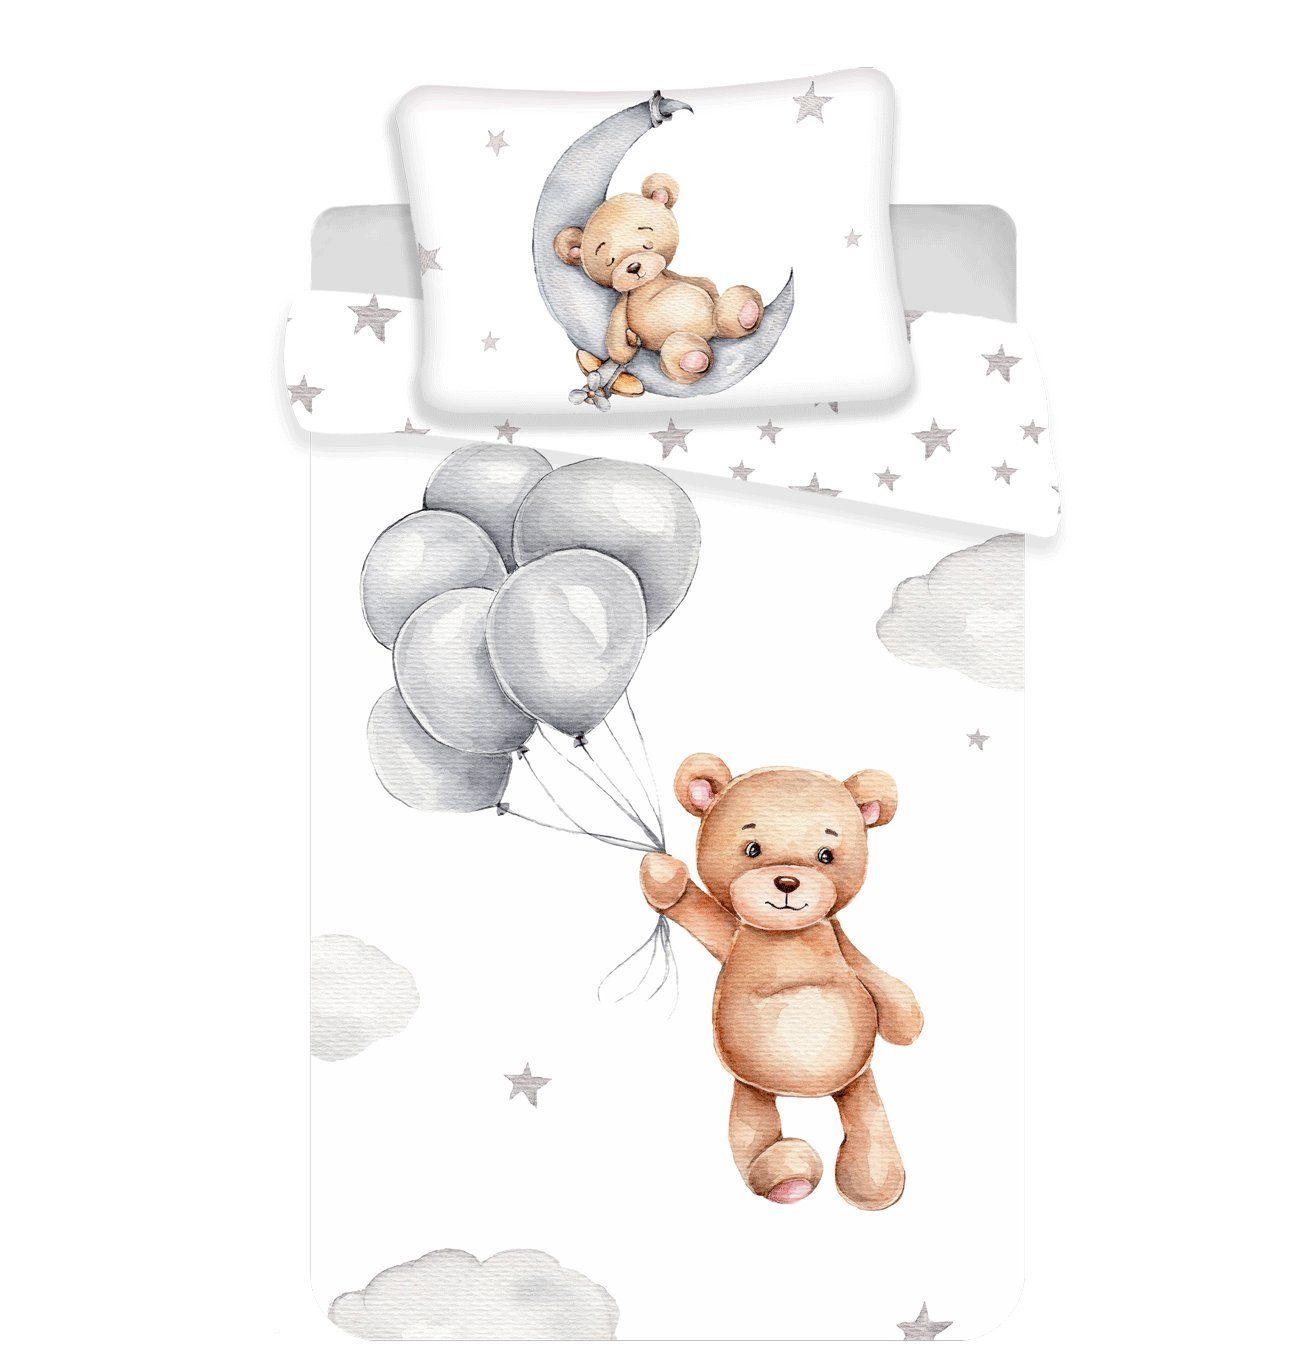 Babybettwäsche Set Bär Weiß 100x135 cm, 40x60 cm, Häßler Homefashion, 100% Baumwolle, 2 teilig, mit Reißverschluss